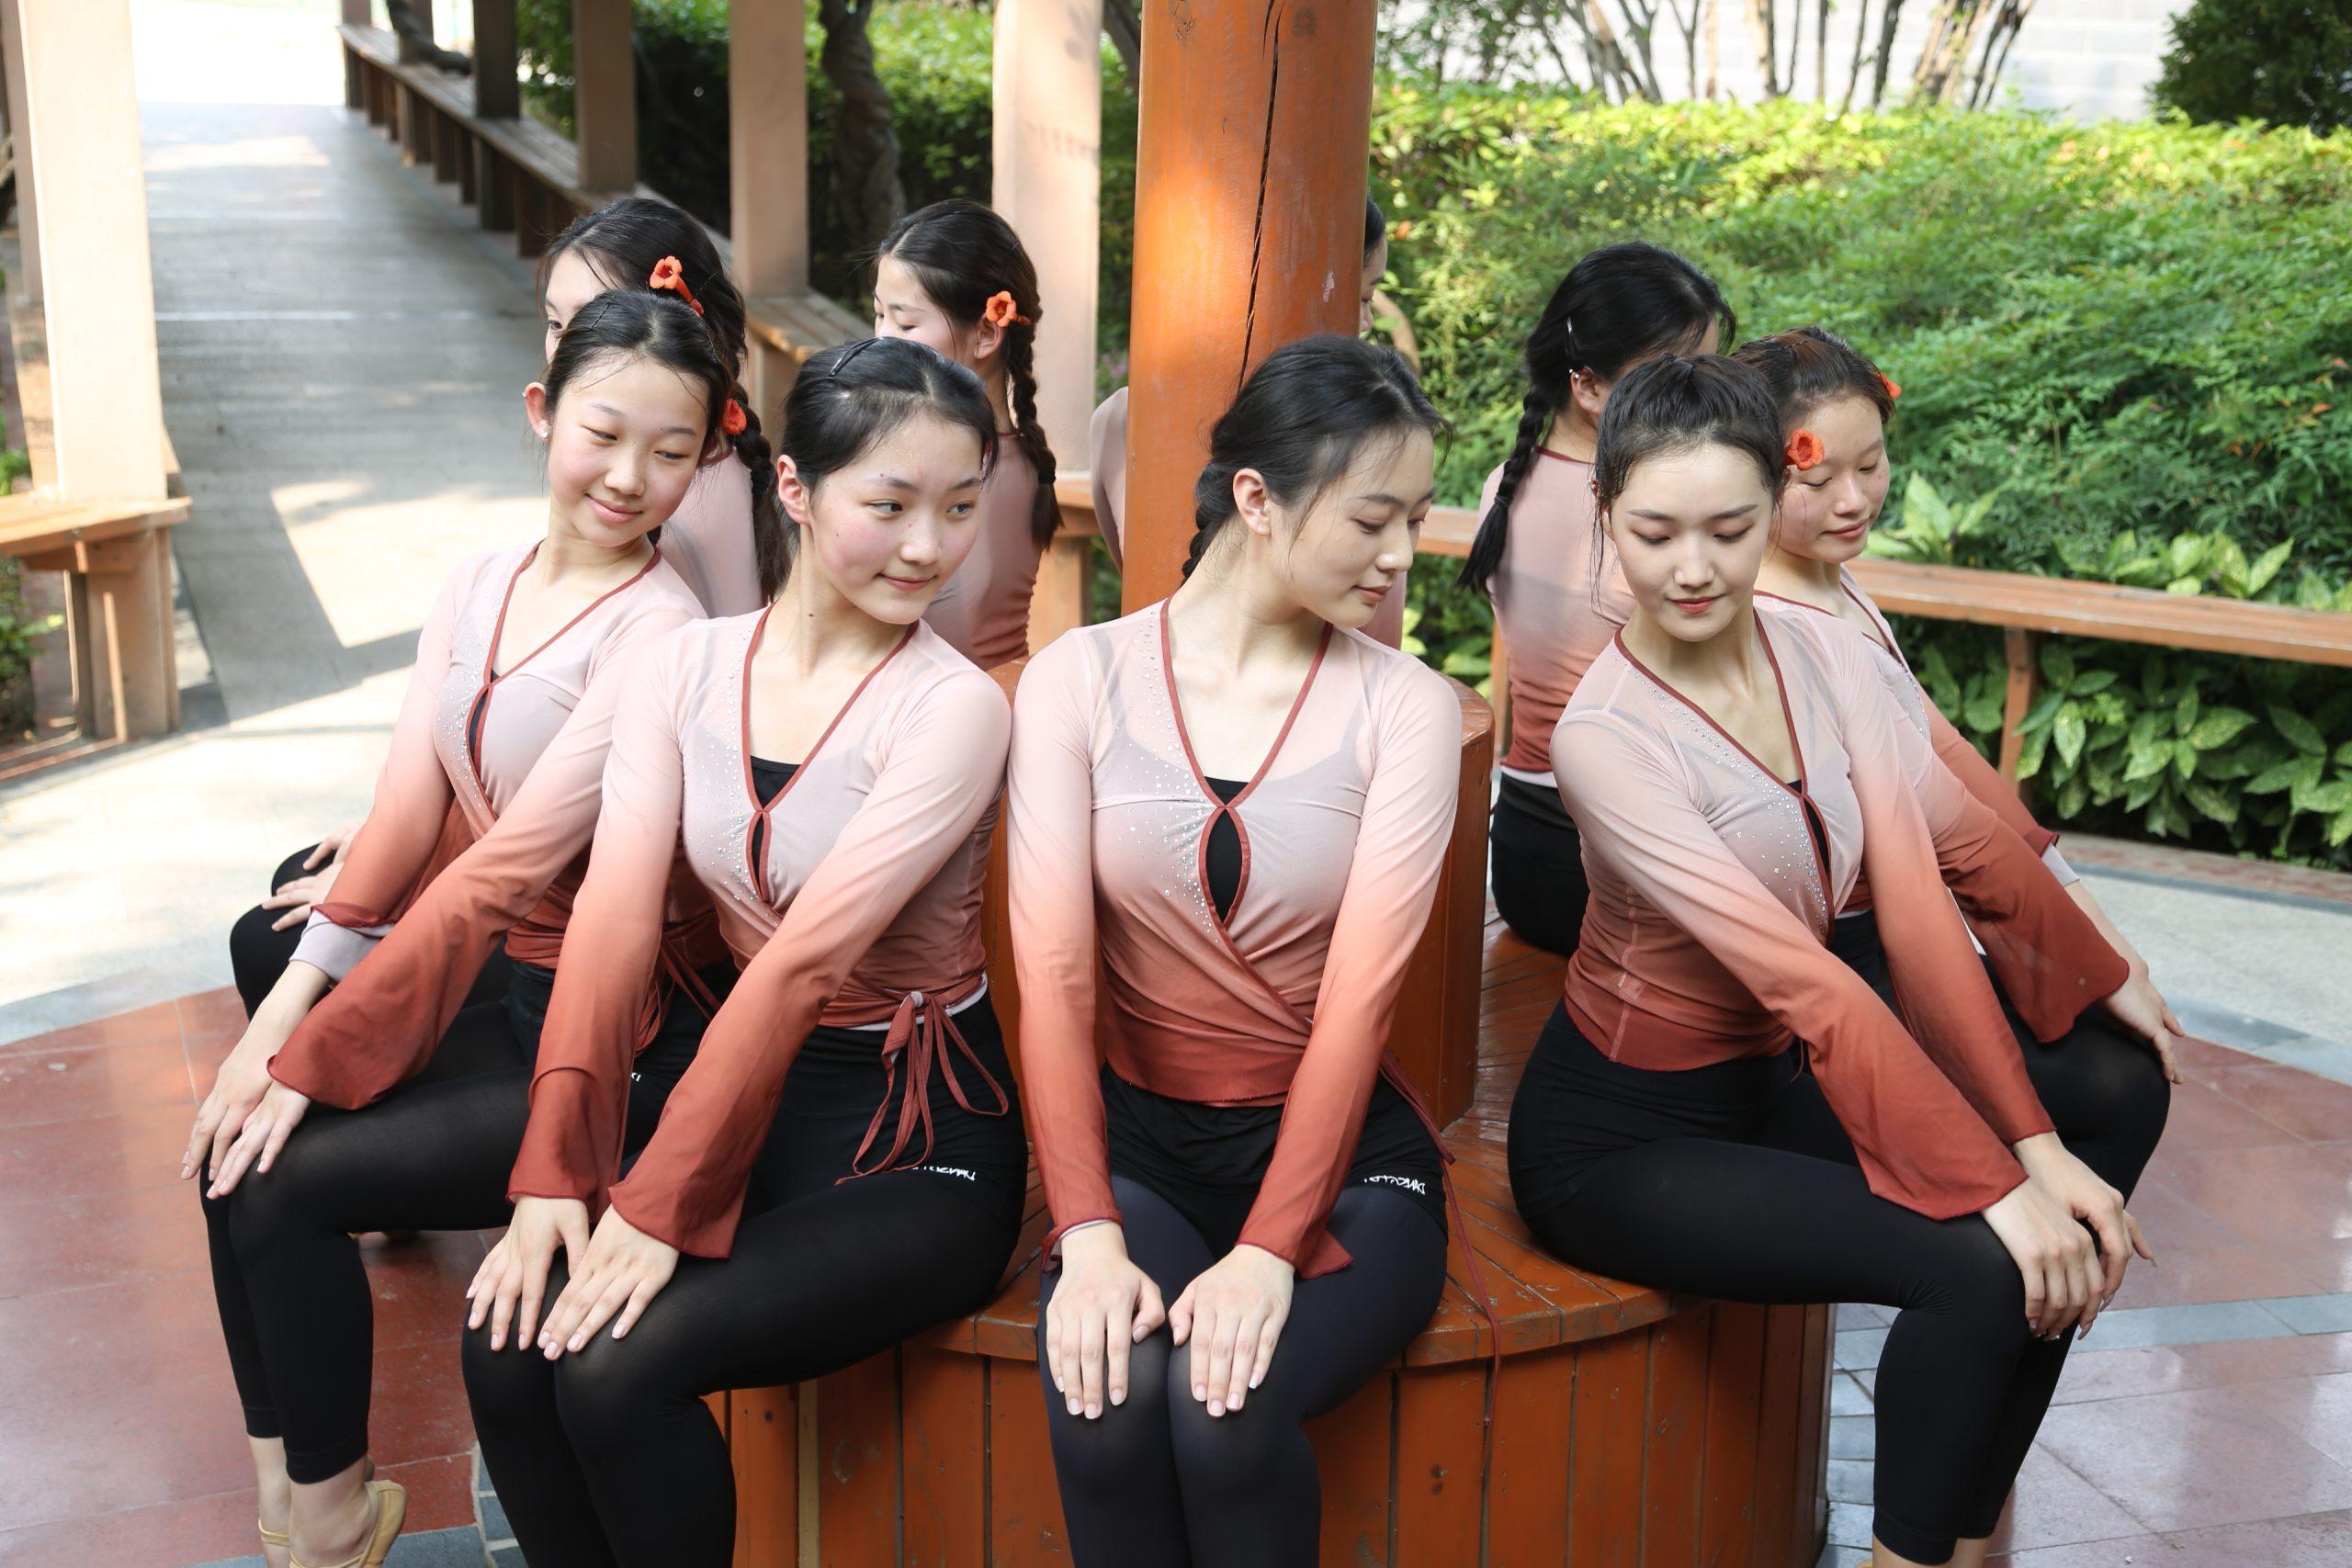 舞蹈表演专业的同学们在校园拍照留念 (http://www.huazistudio.com/) 校内新闻 第5张